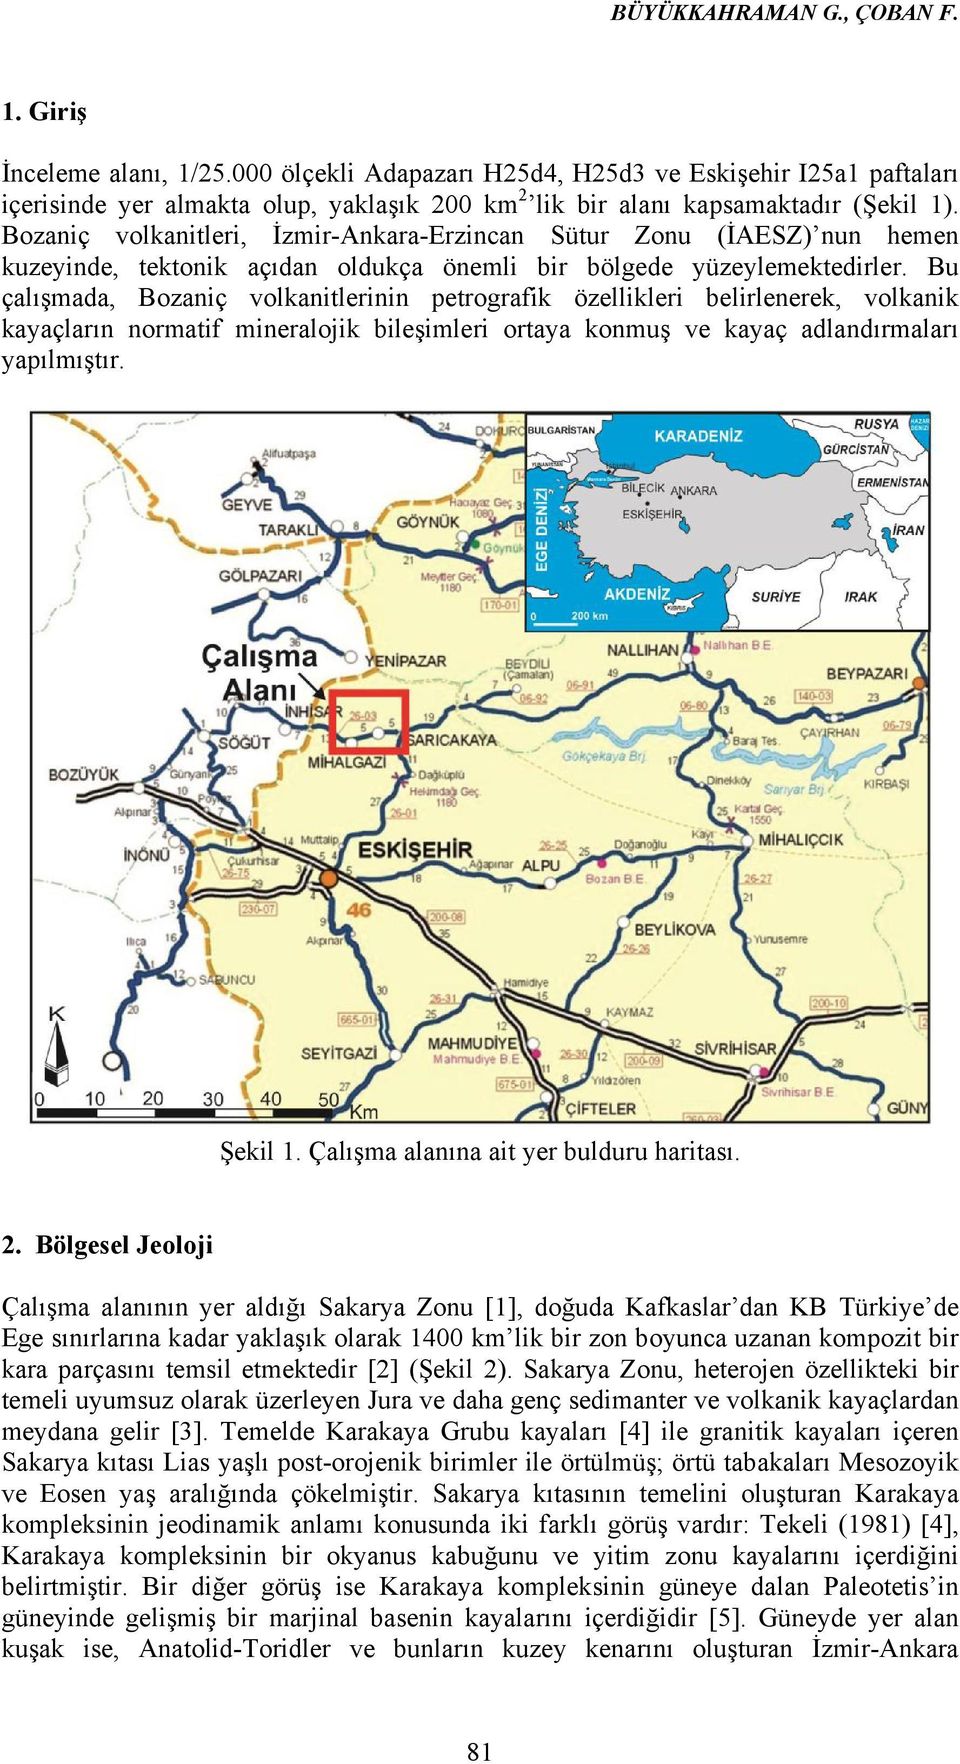 Bozaniç volkanitleri, İzmir-Ankara-Erzincan Sütur Zonu (İAESZ) nun hemen kuzeyinde, tektonik açıdan oldukça önemli bir bölgede yüzeylemektedirler.